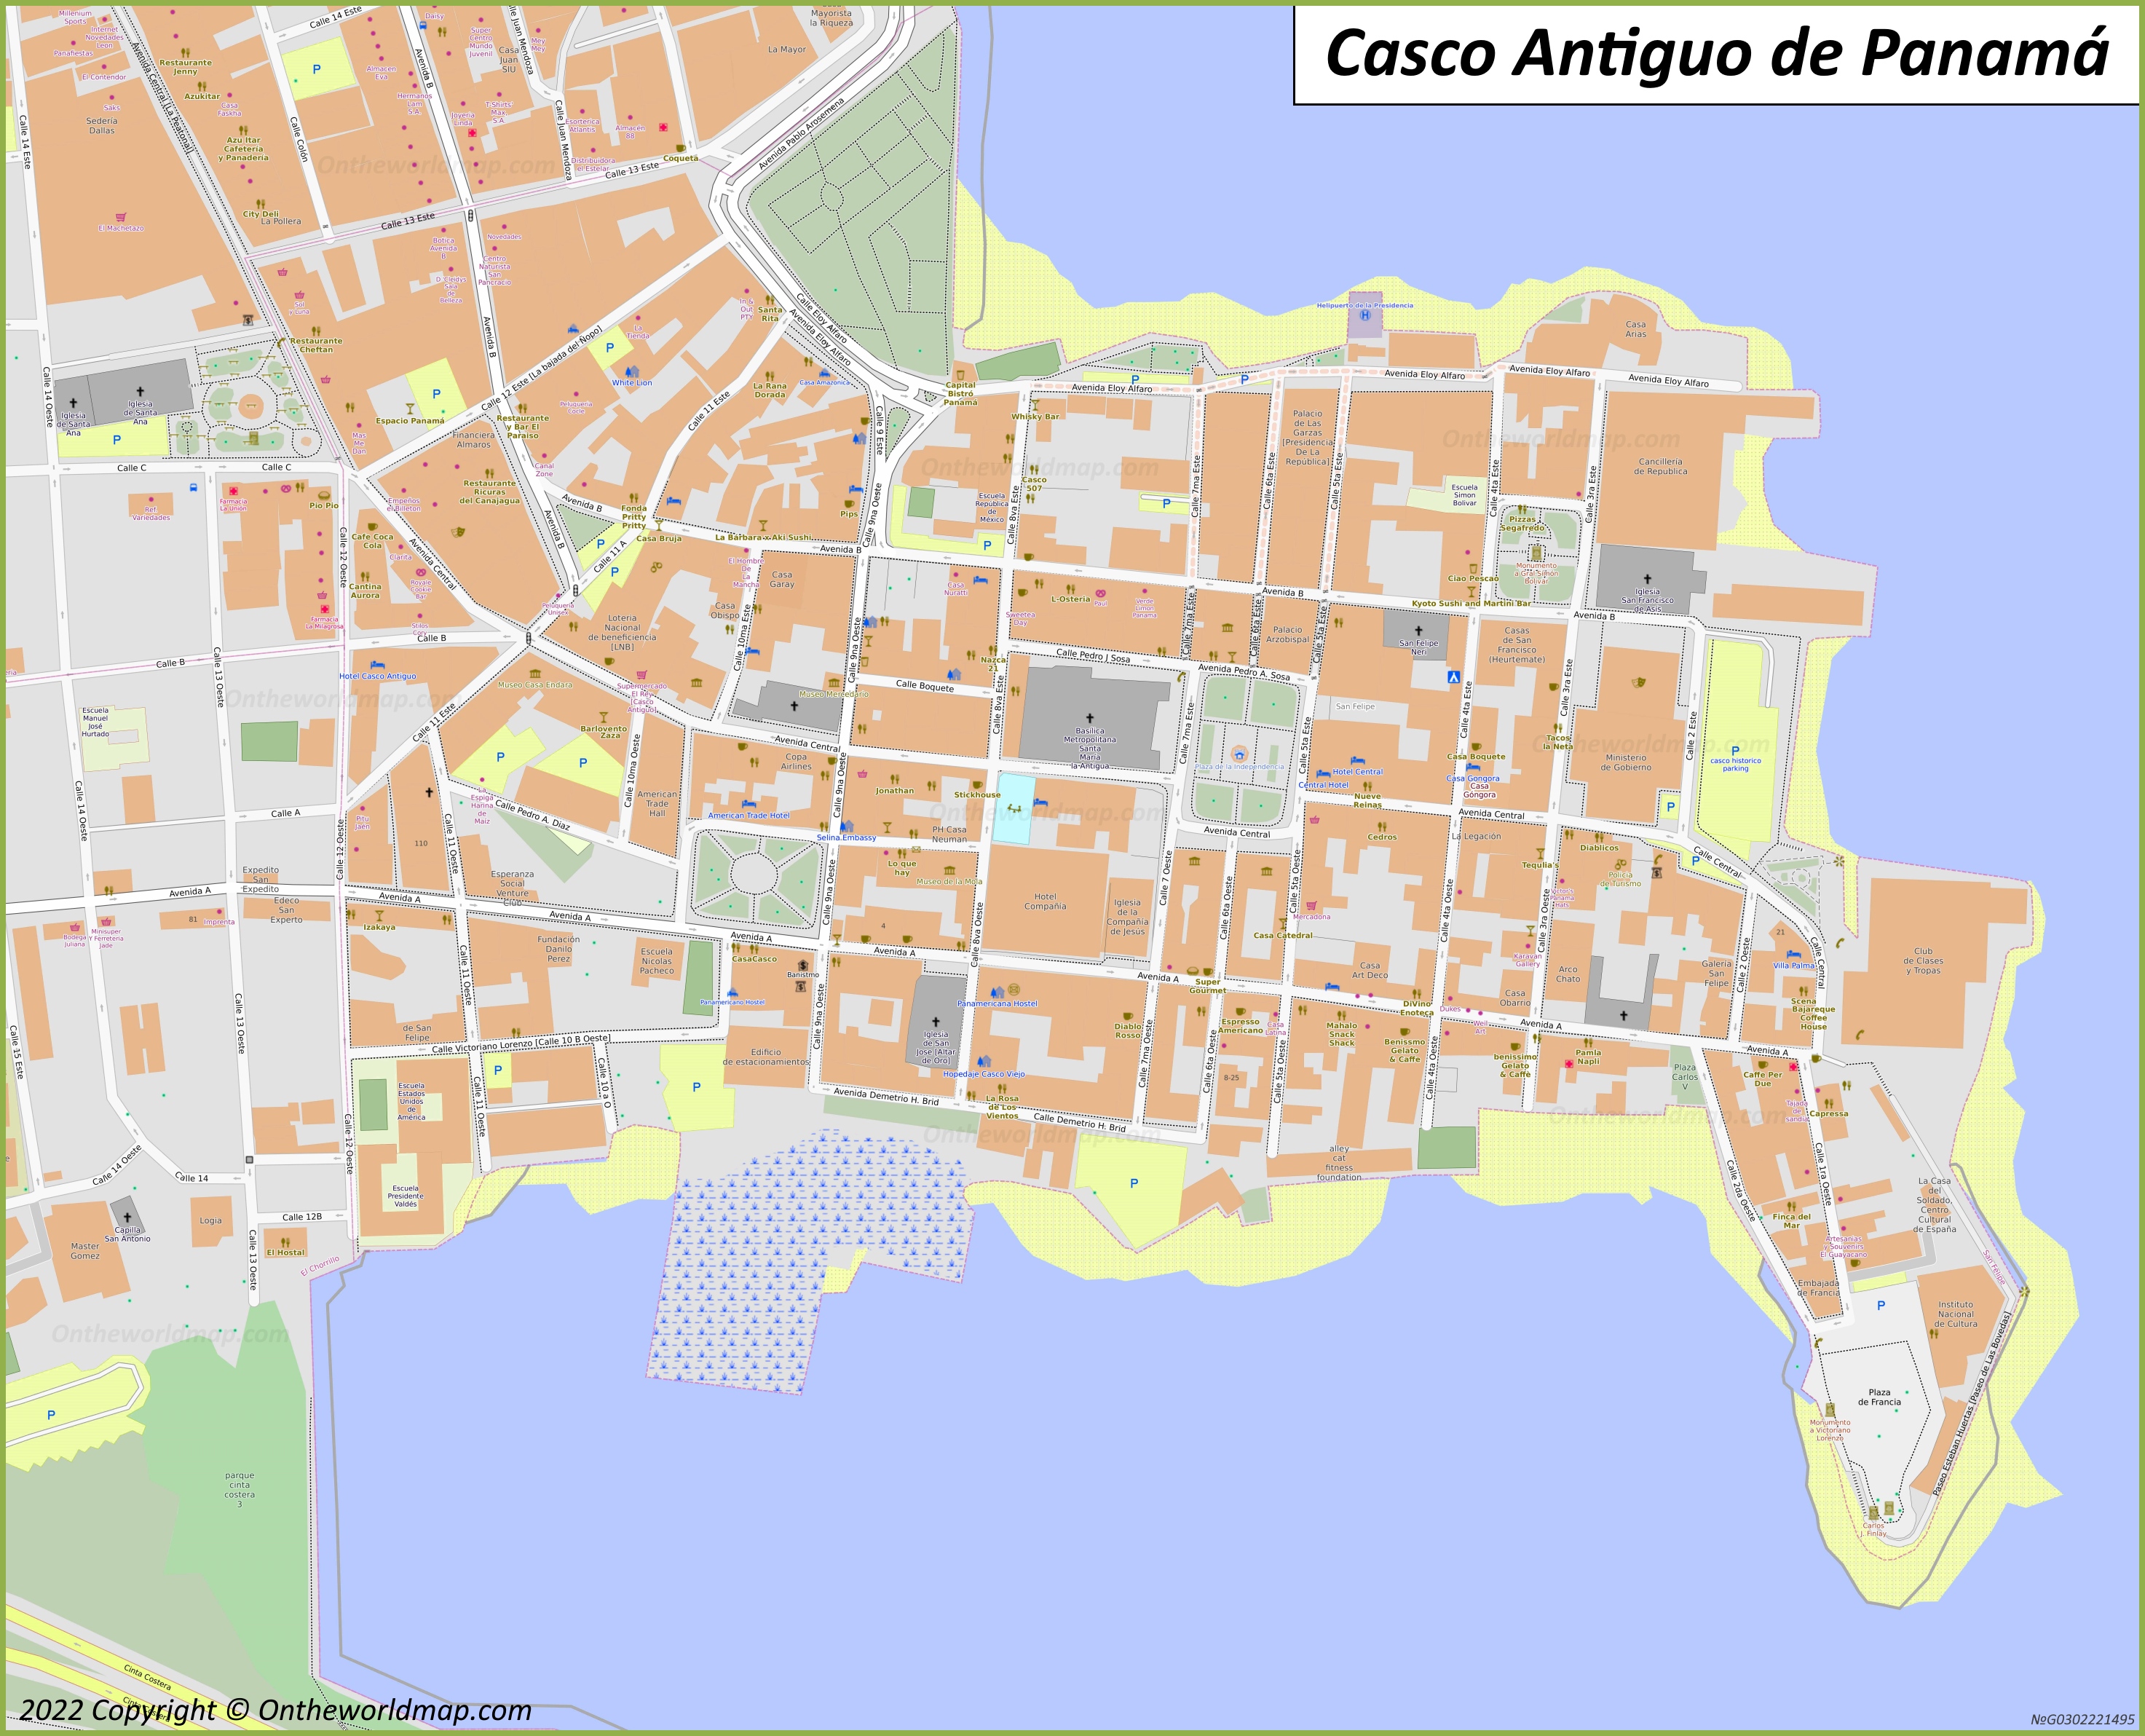 Mapa del Casco Antiguo de Panamá